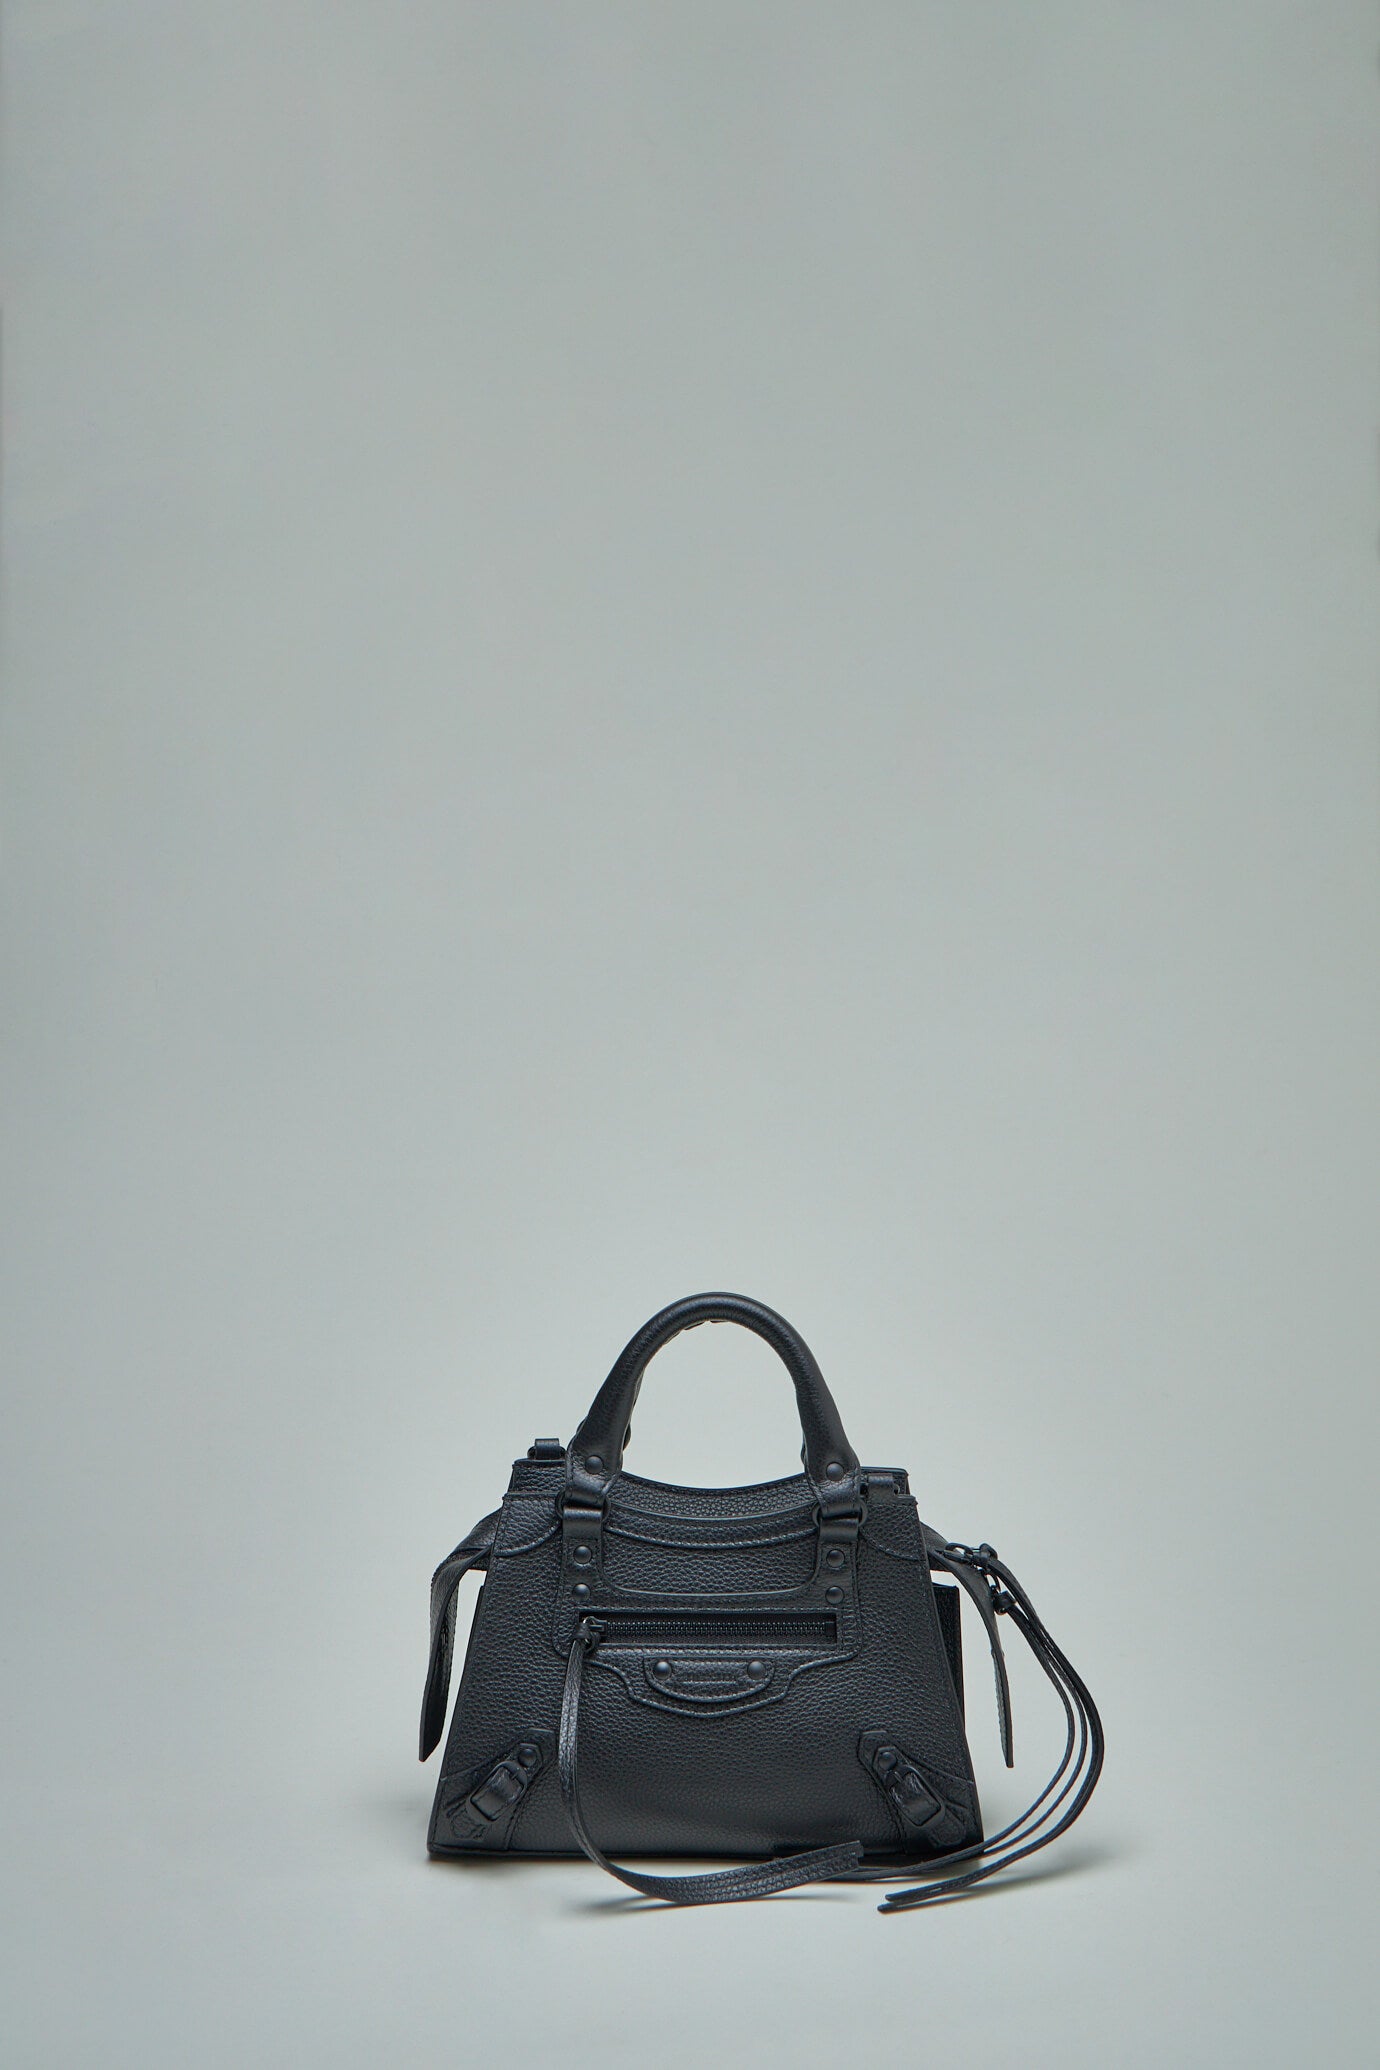 Balenciaga Classic Nano City Nano Leather Bag in Black